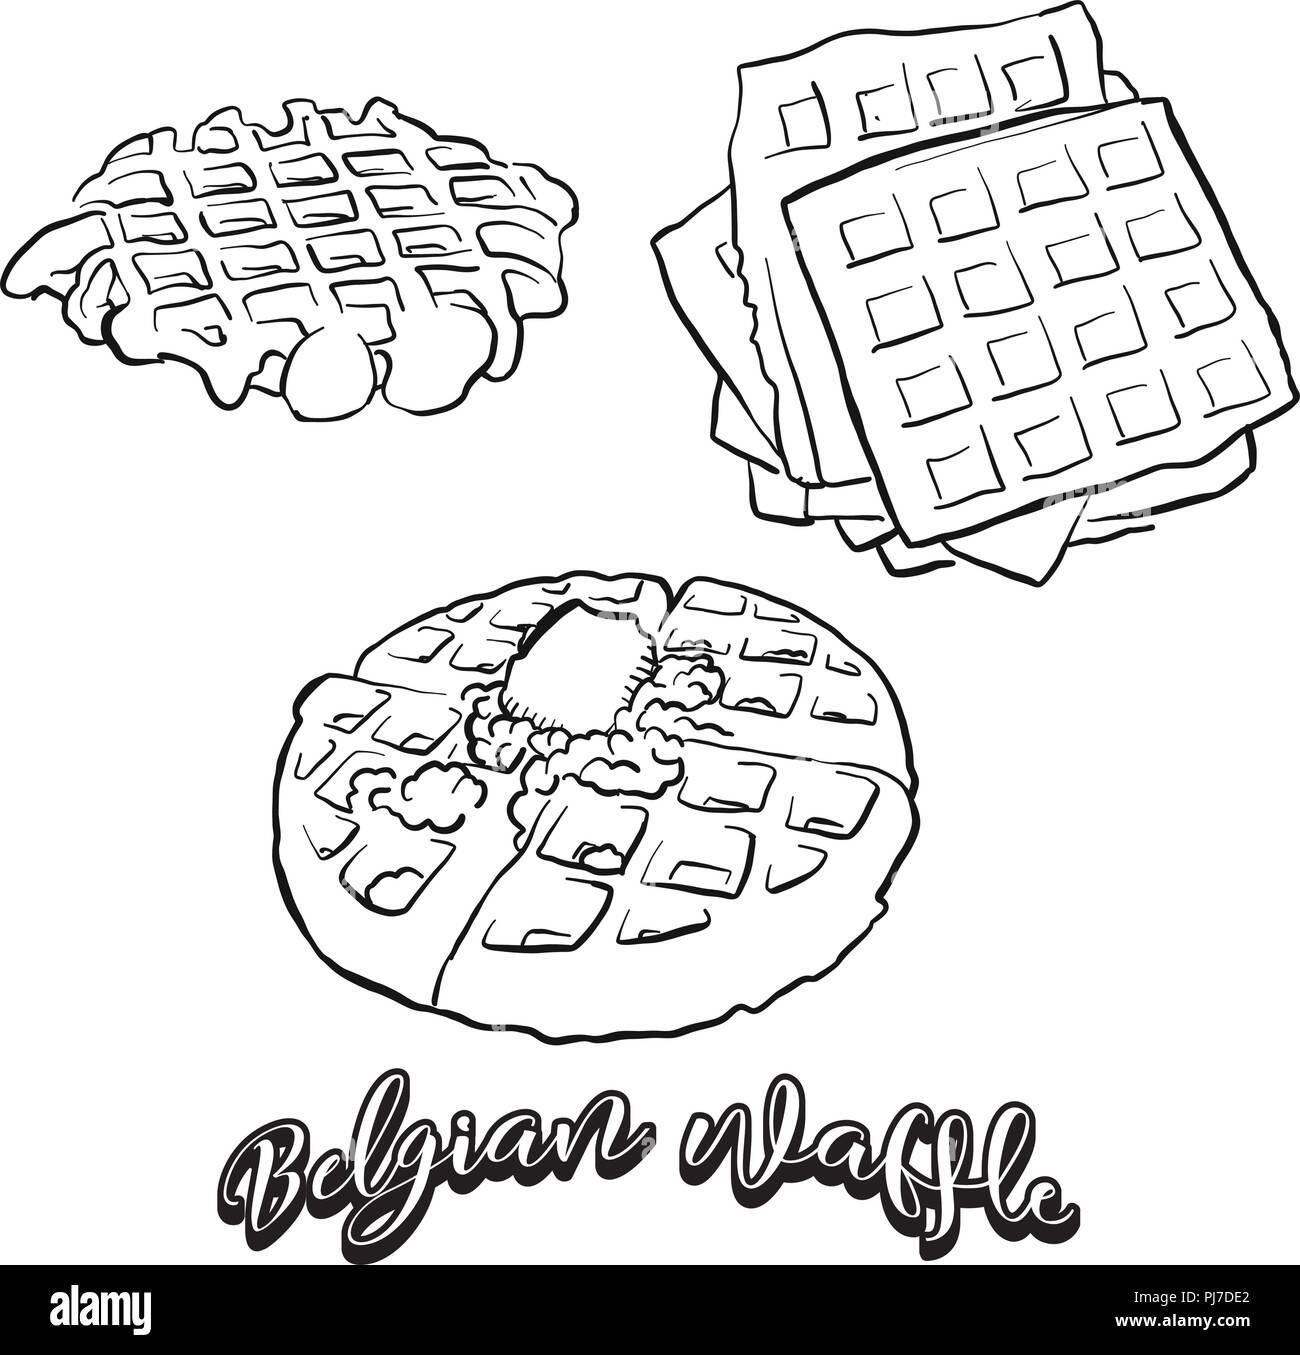 Mano bozzetto di cialda belga pane. Vettore di disegno Waffle cibo, usualmente noto in Belgio. Illustrazione di pane serie. Illustrazione Vettoriale